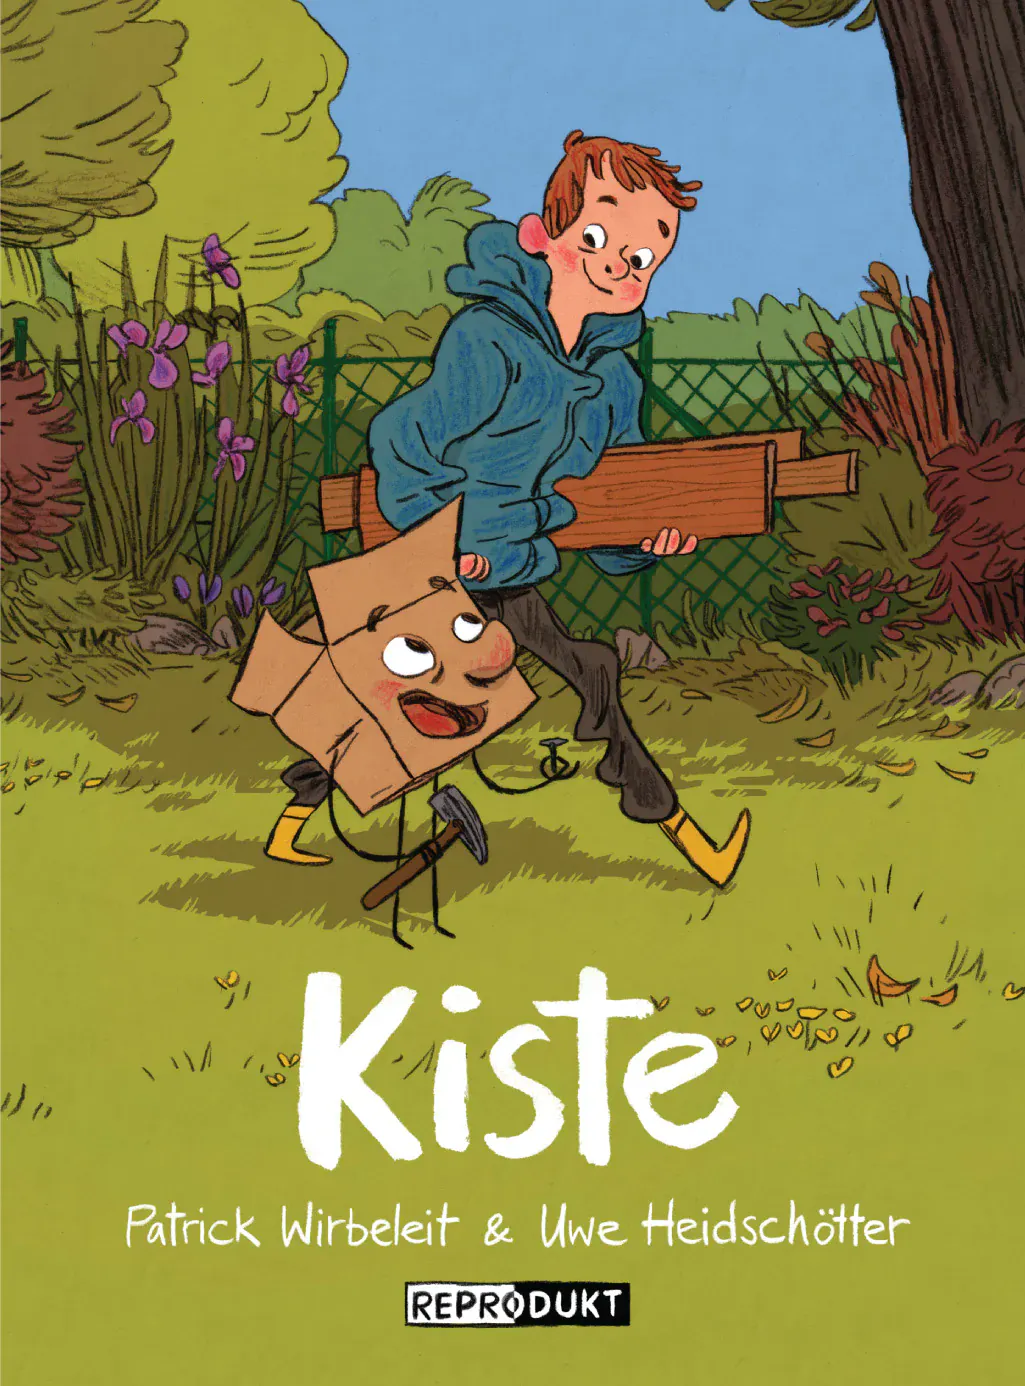 Cover des Comics "Kiste" aus dem Reprodukt Verlag.